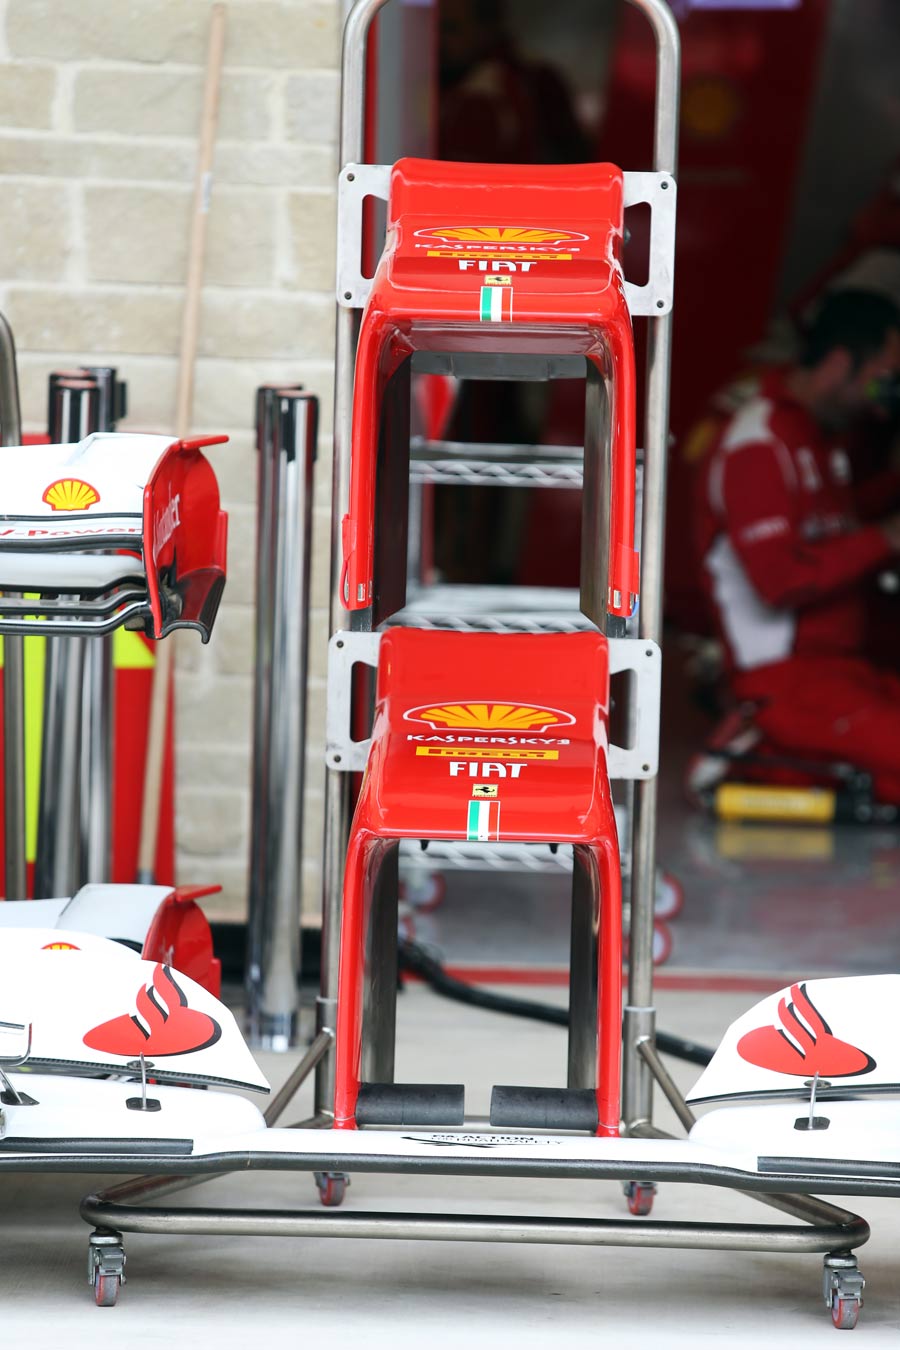 Ferrari nosecones in the Austin pit lane